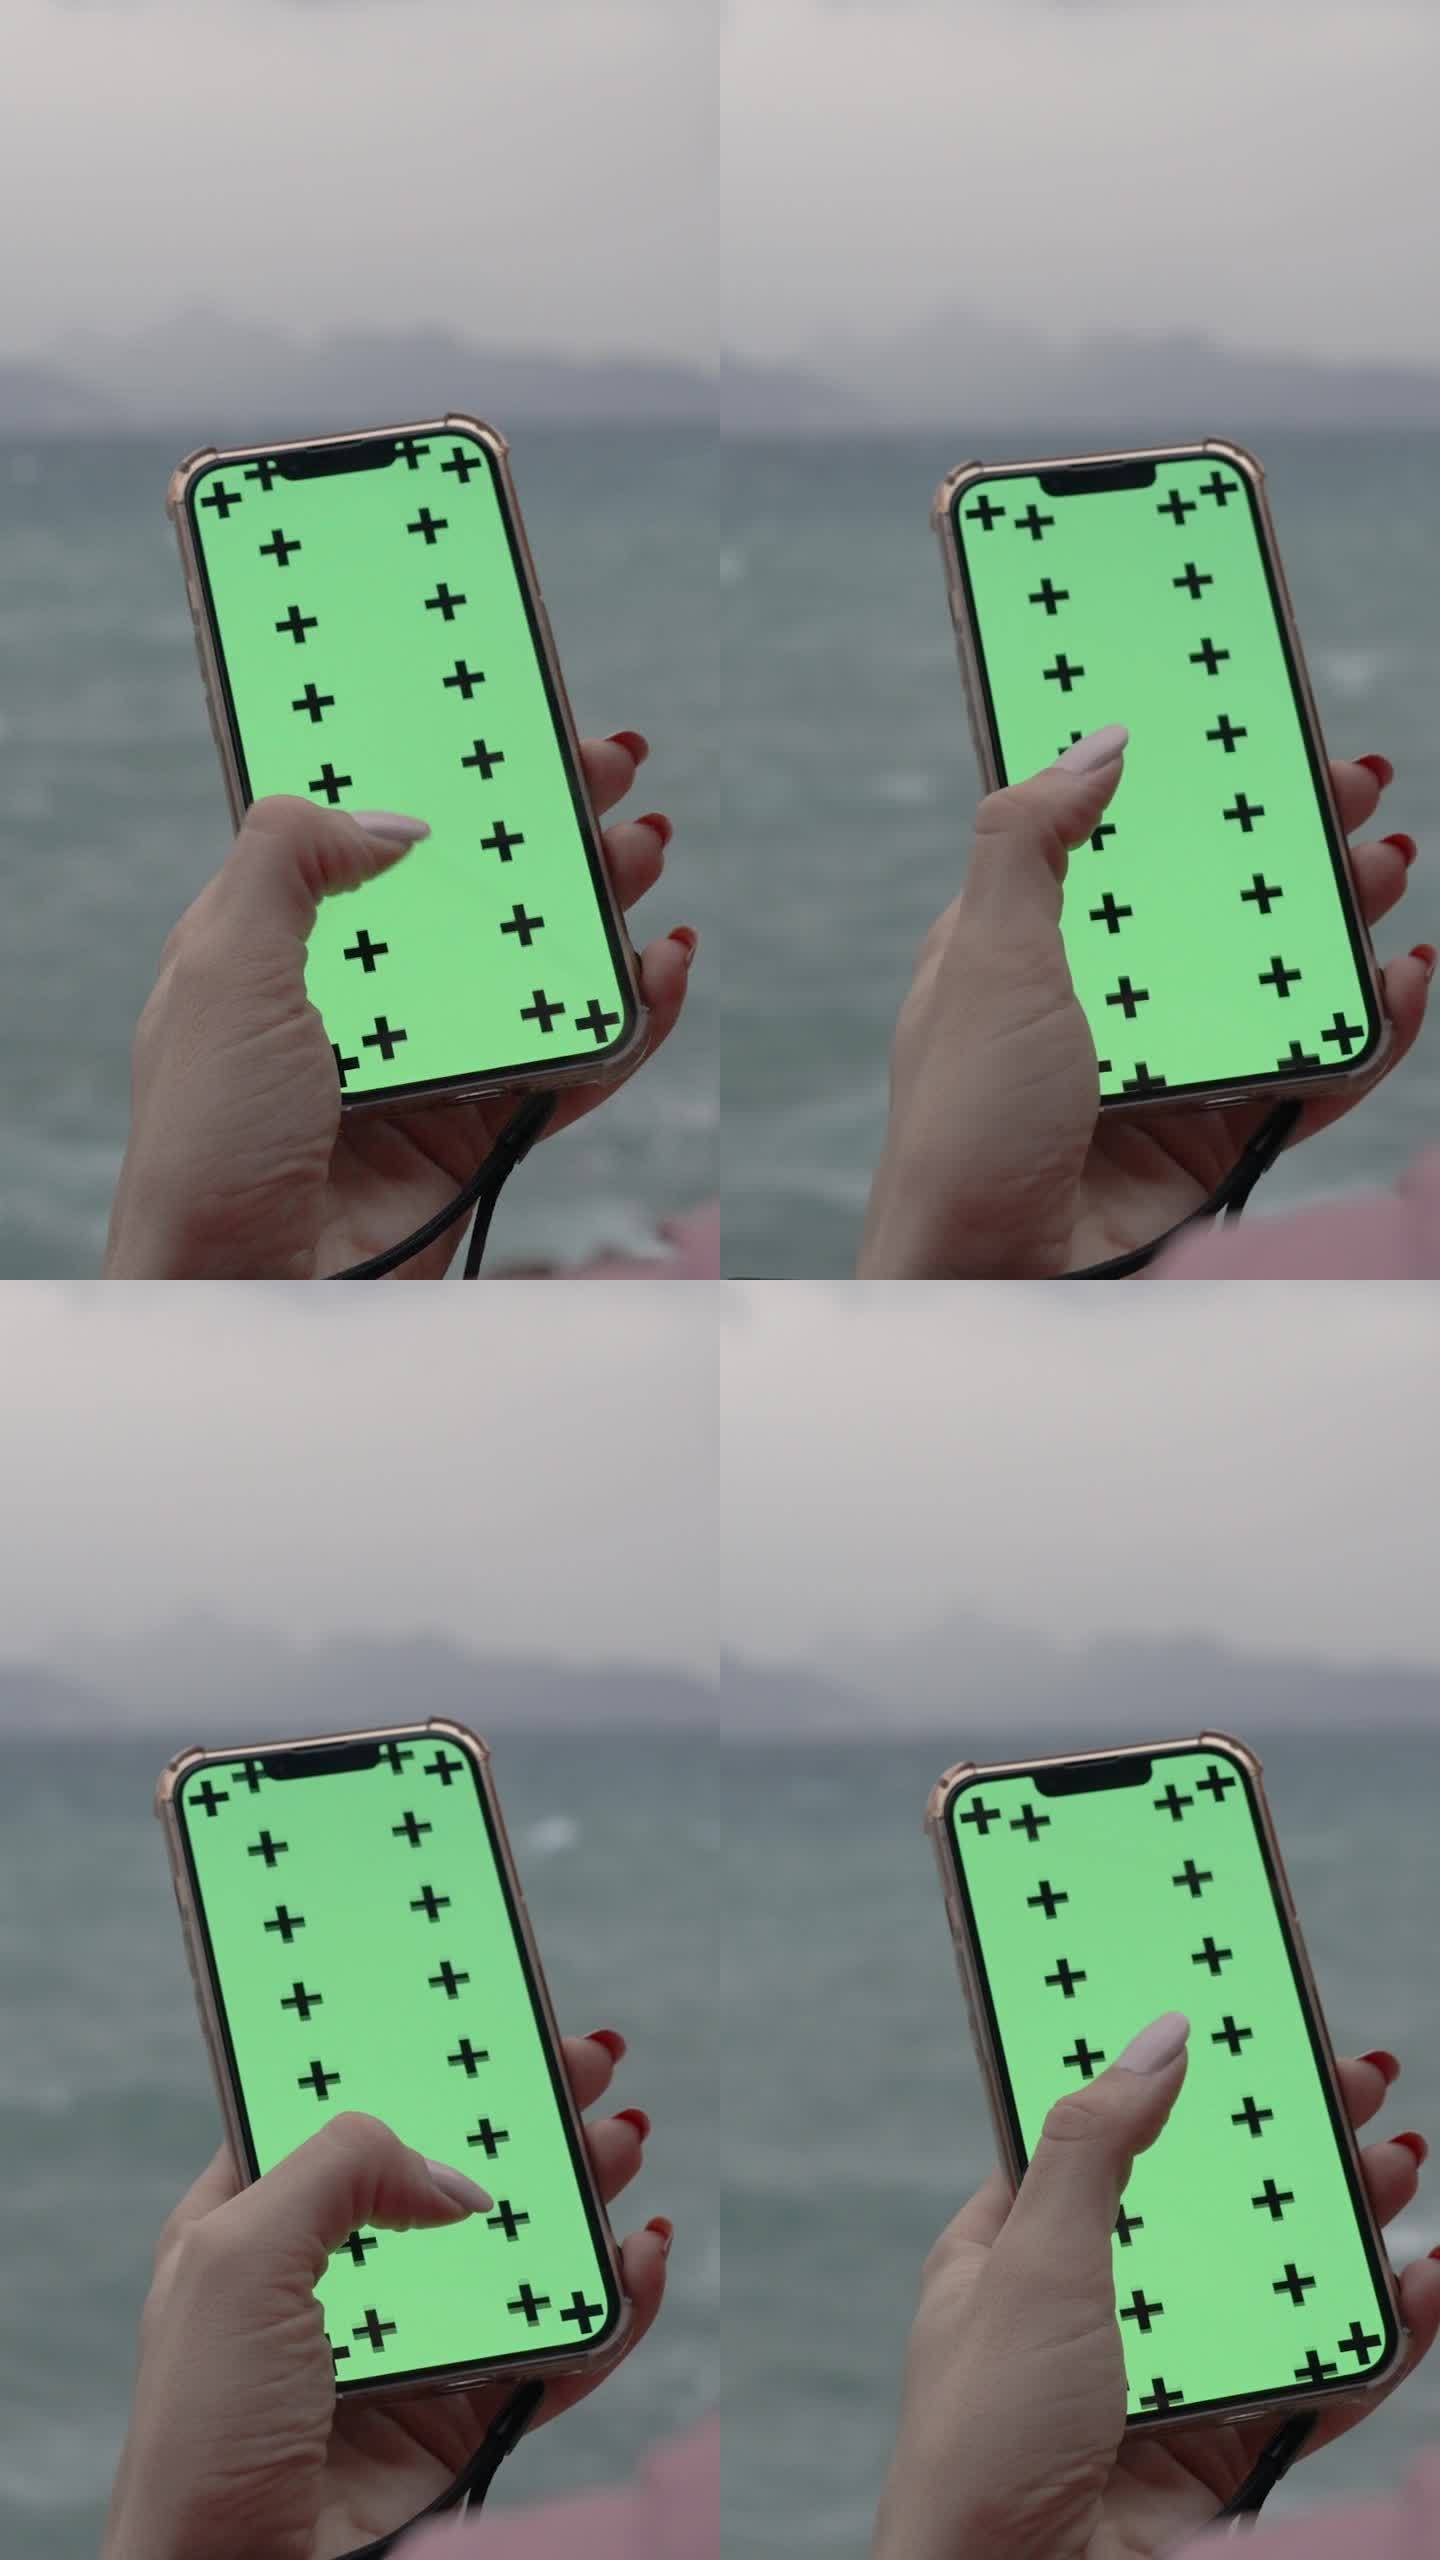 垂直视频。从一个女人的头后面看，她在智能手机上滚动着一些东西，绿色的屏幕是一个模型，背景是海边阴天的